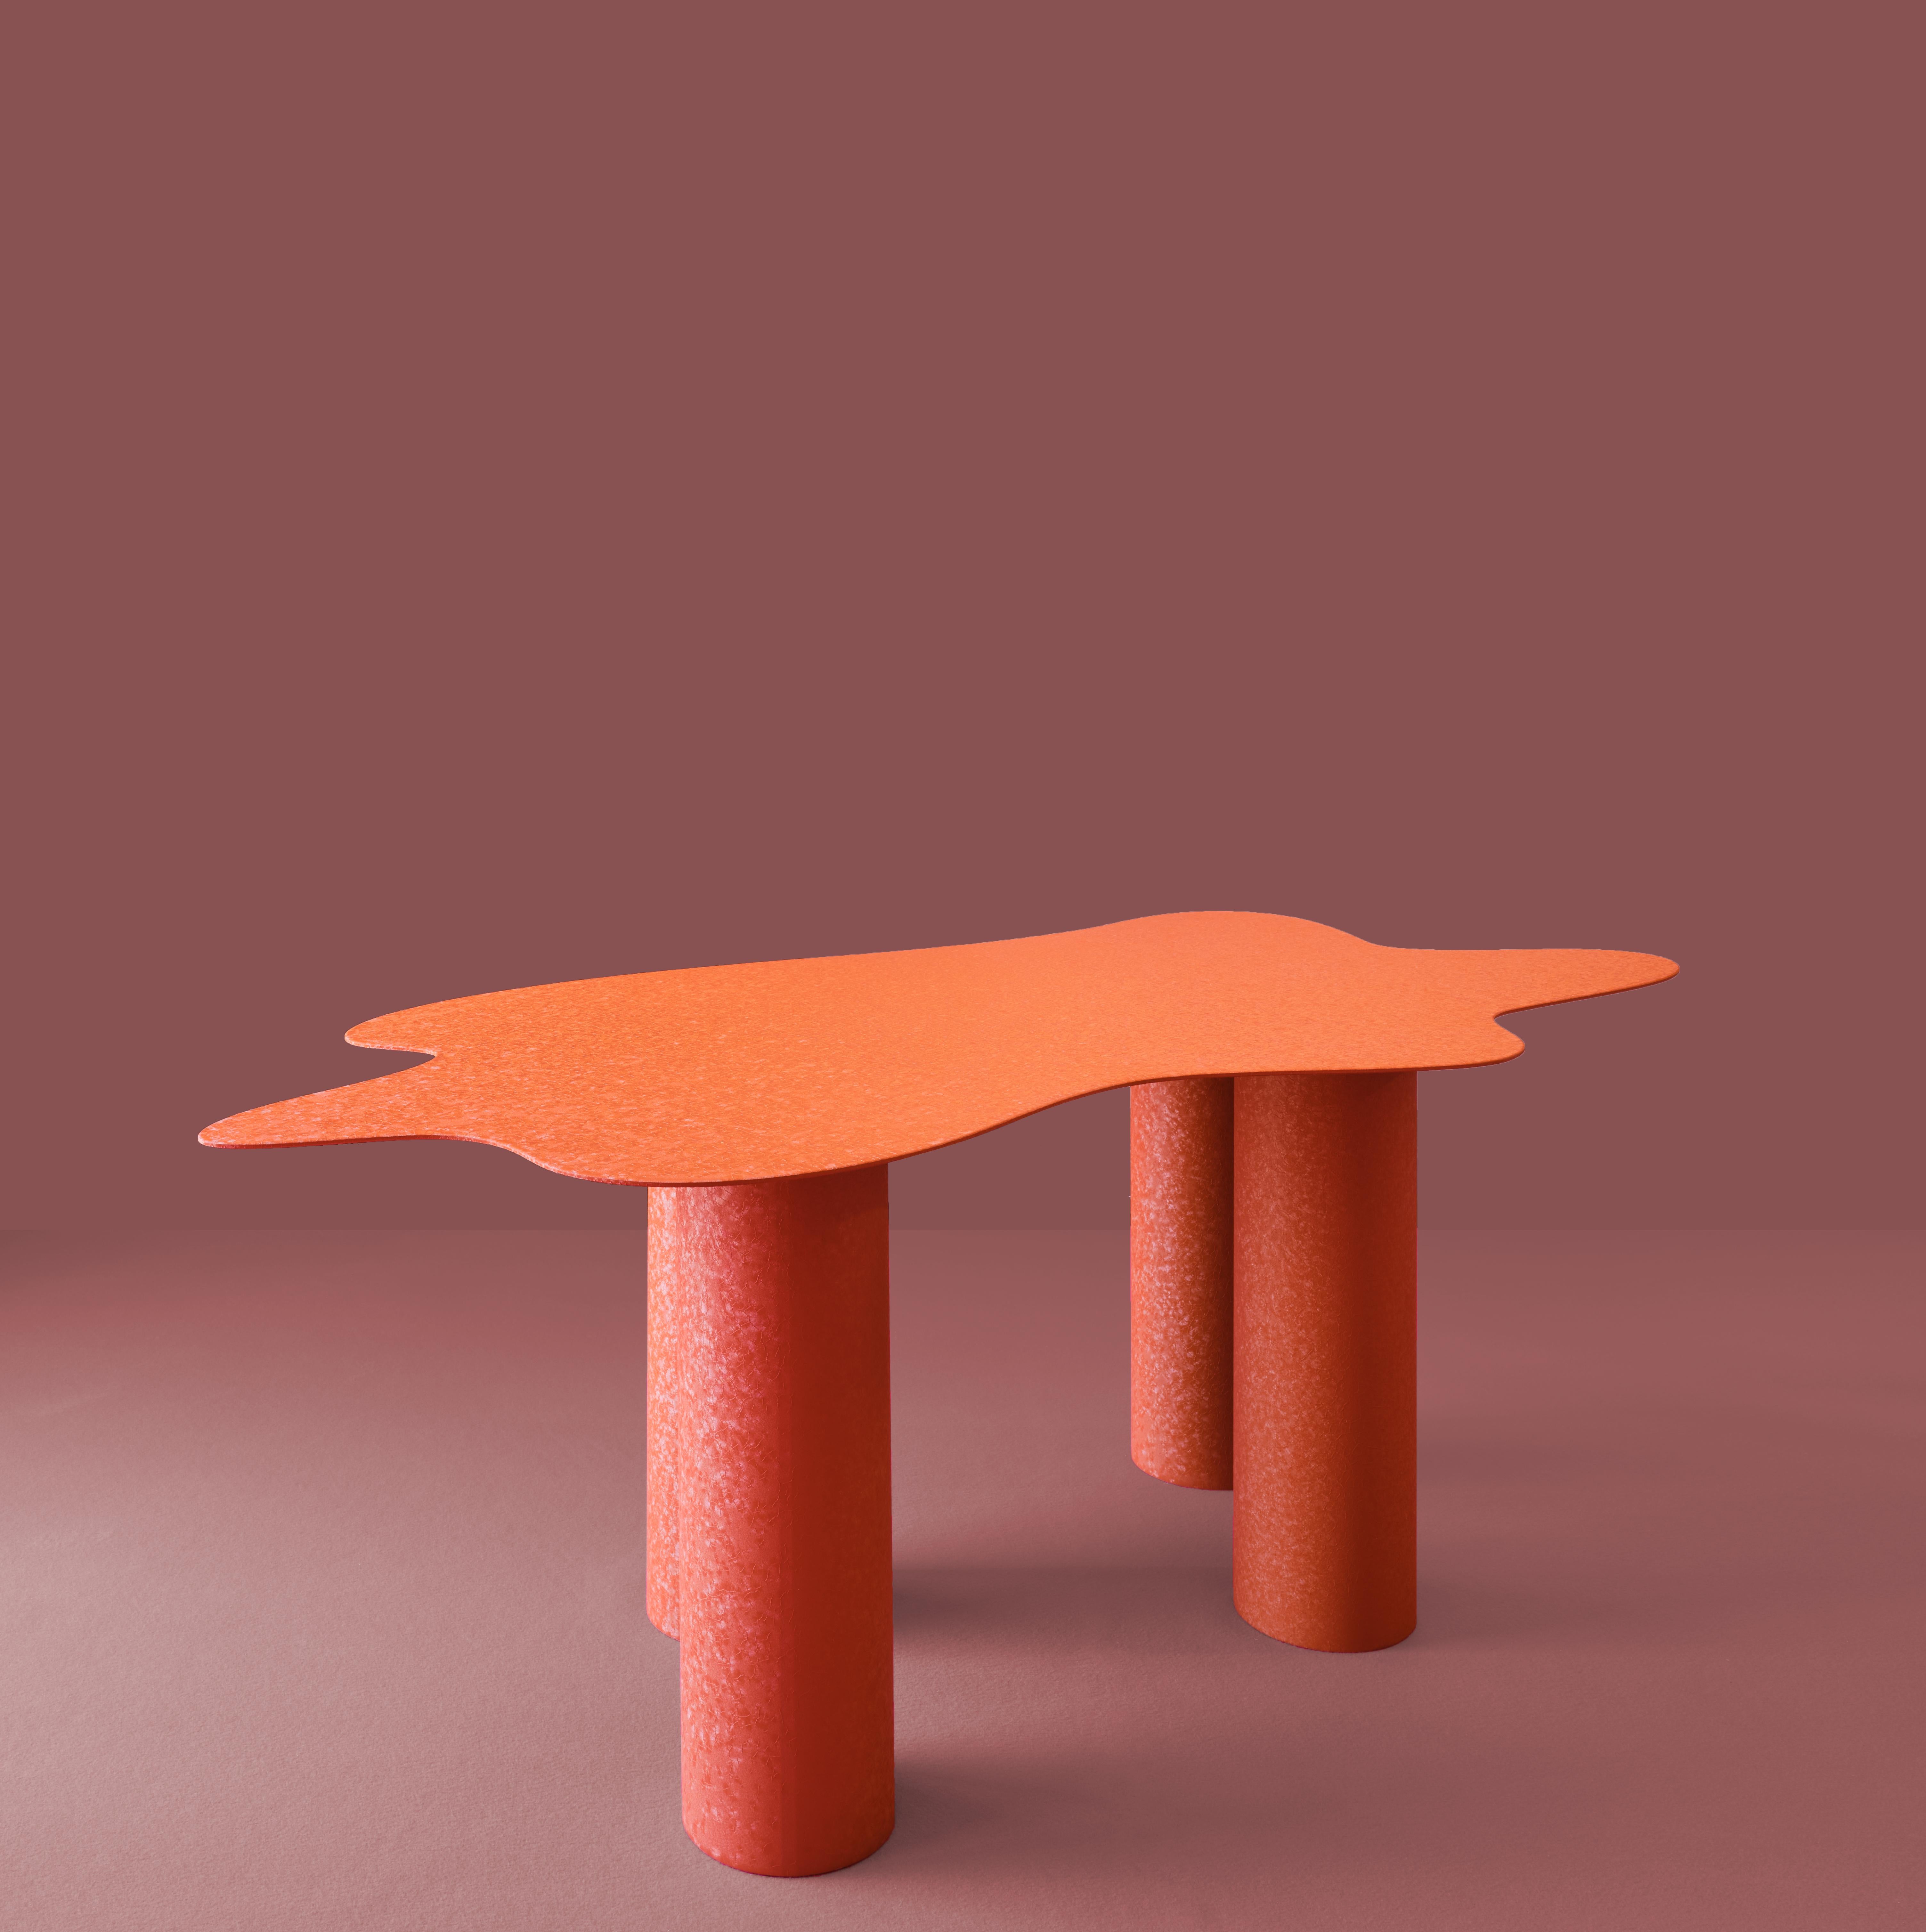 La table Onda travaille sur la juxtaposition des volumes et des finitions.

Un plateau organique extra-fin ondulé sur des pieds cylindriques architecturaux et épais. Comme une feuille de papier, le plateau repose délicatement sur les pieds